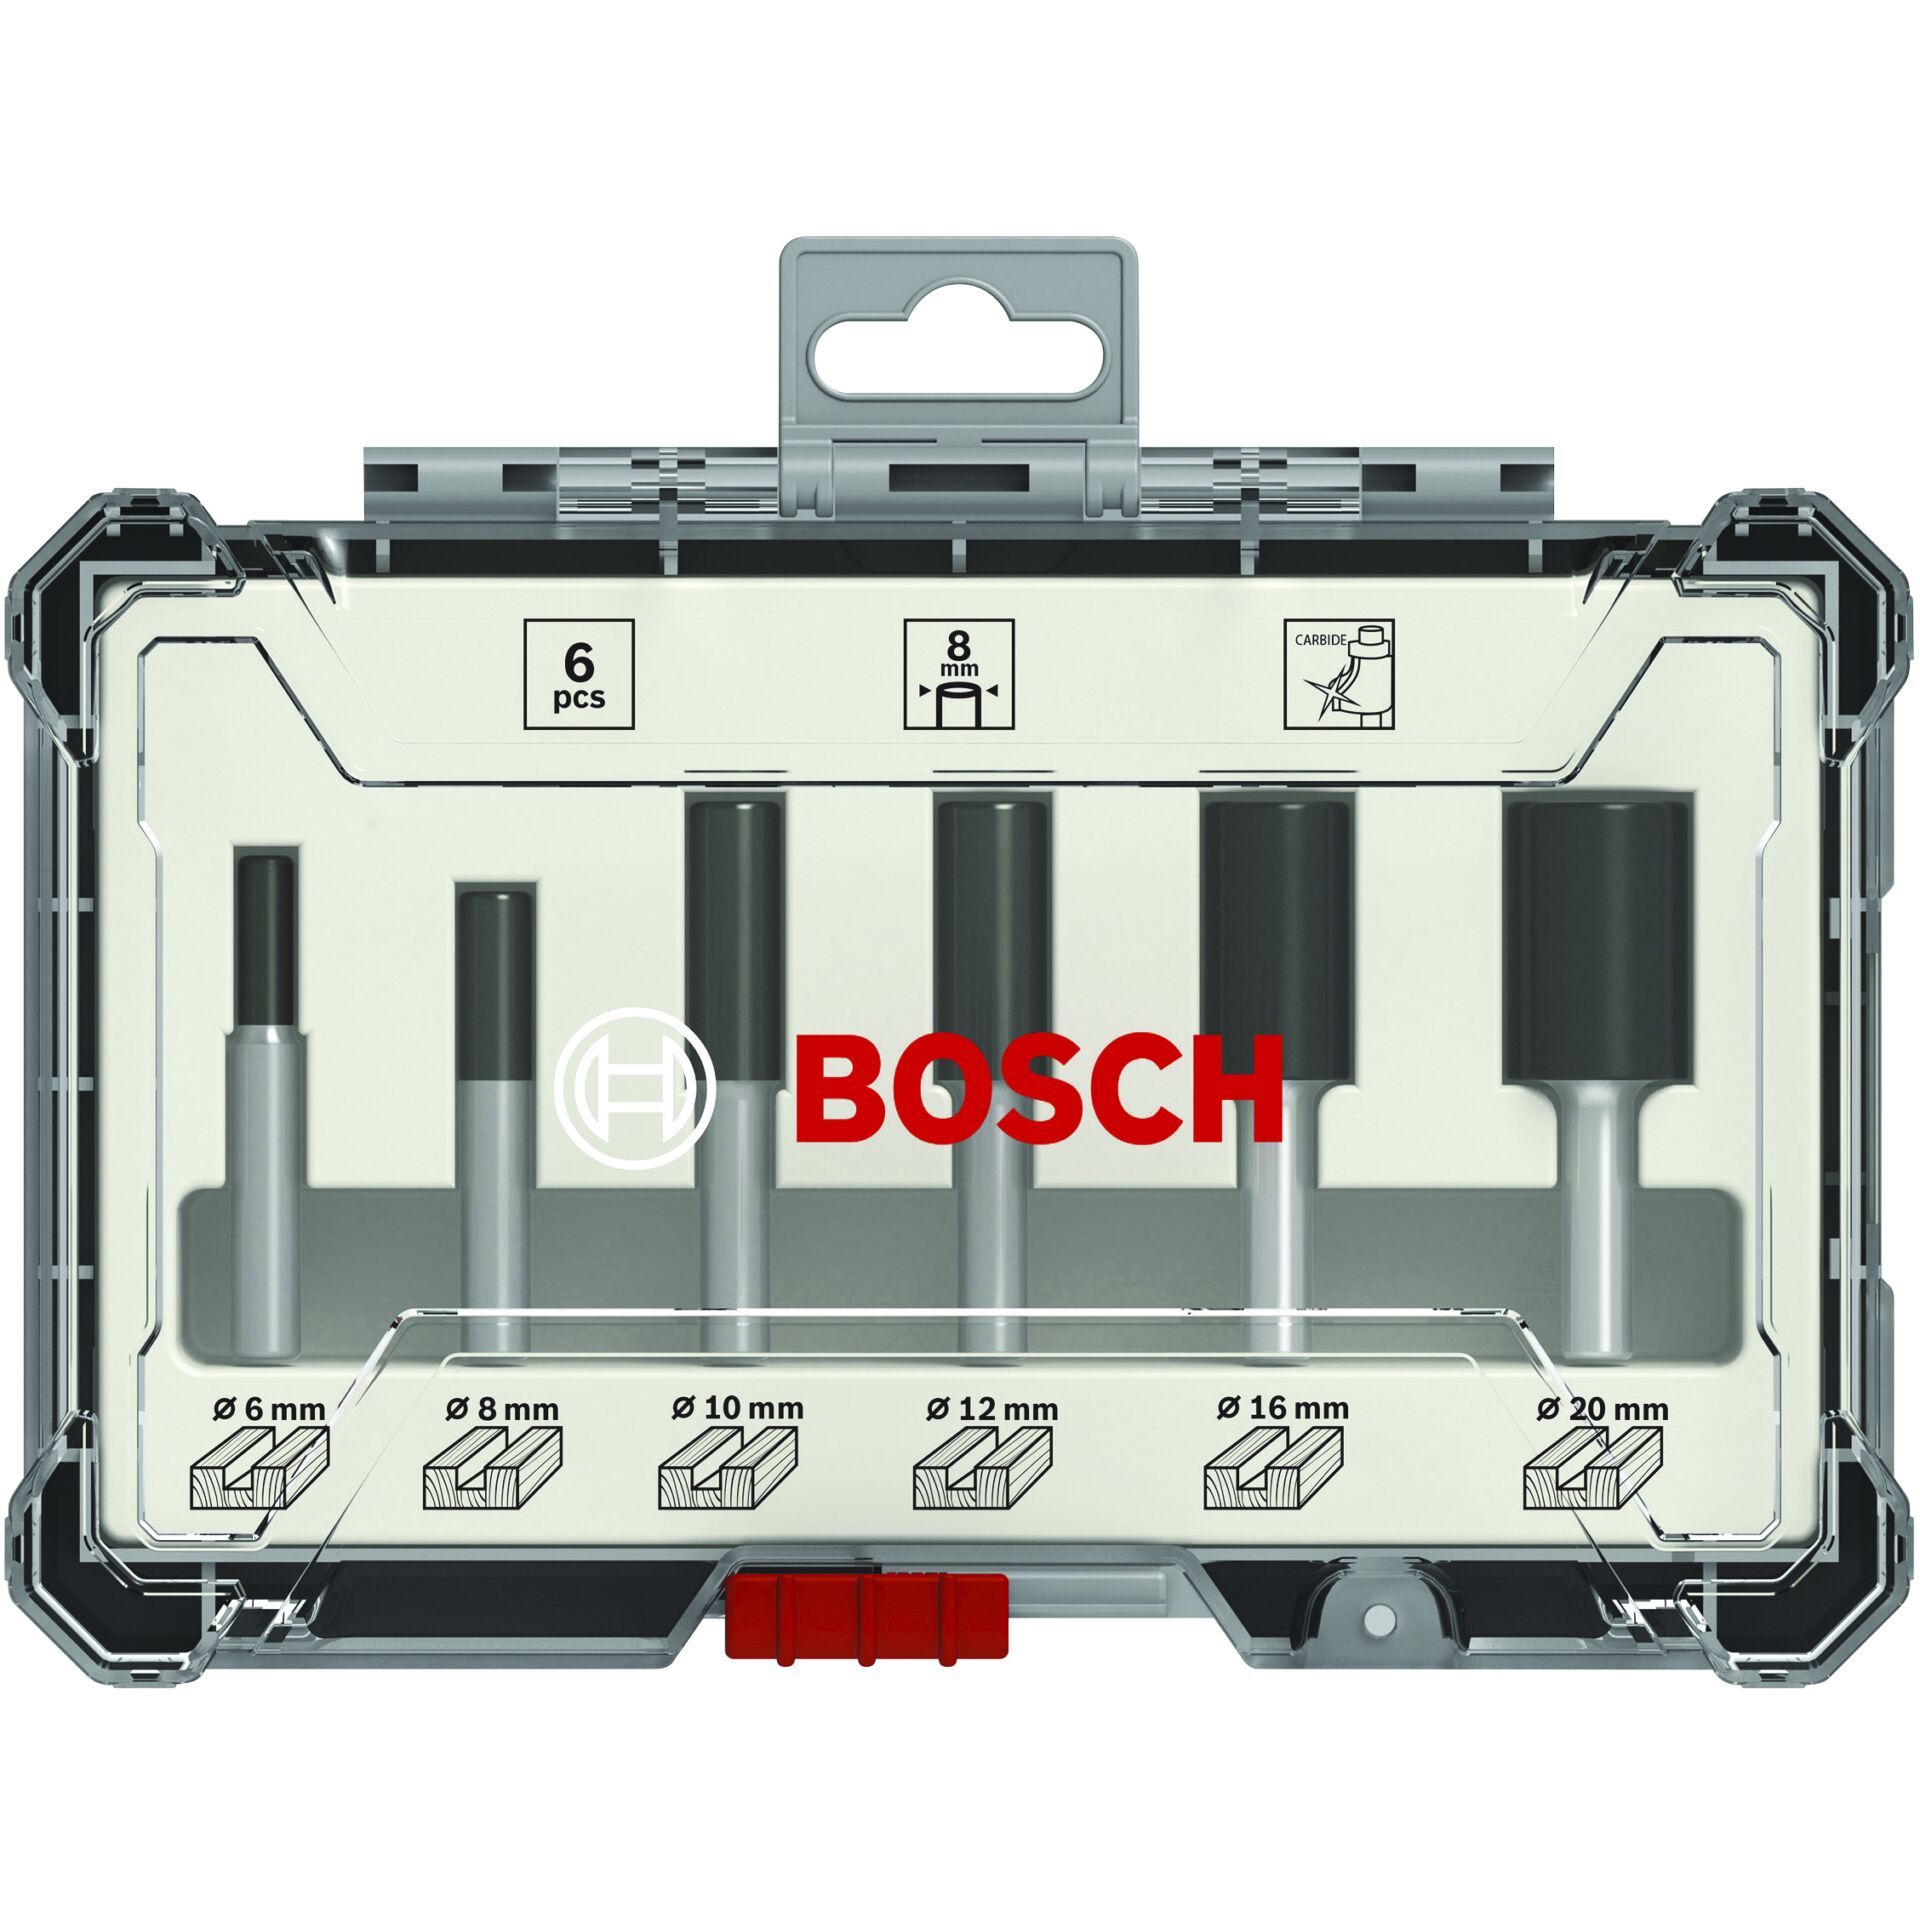 Bosch 6 pcs Groove Cutter Set 6mm Shank